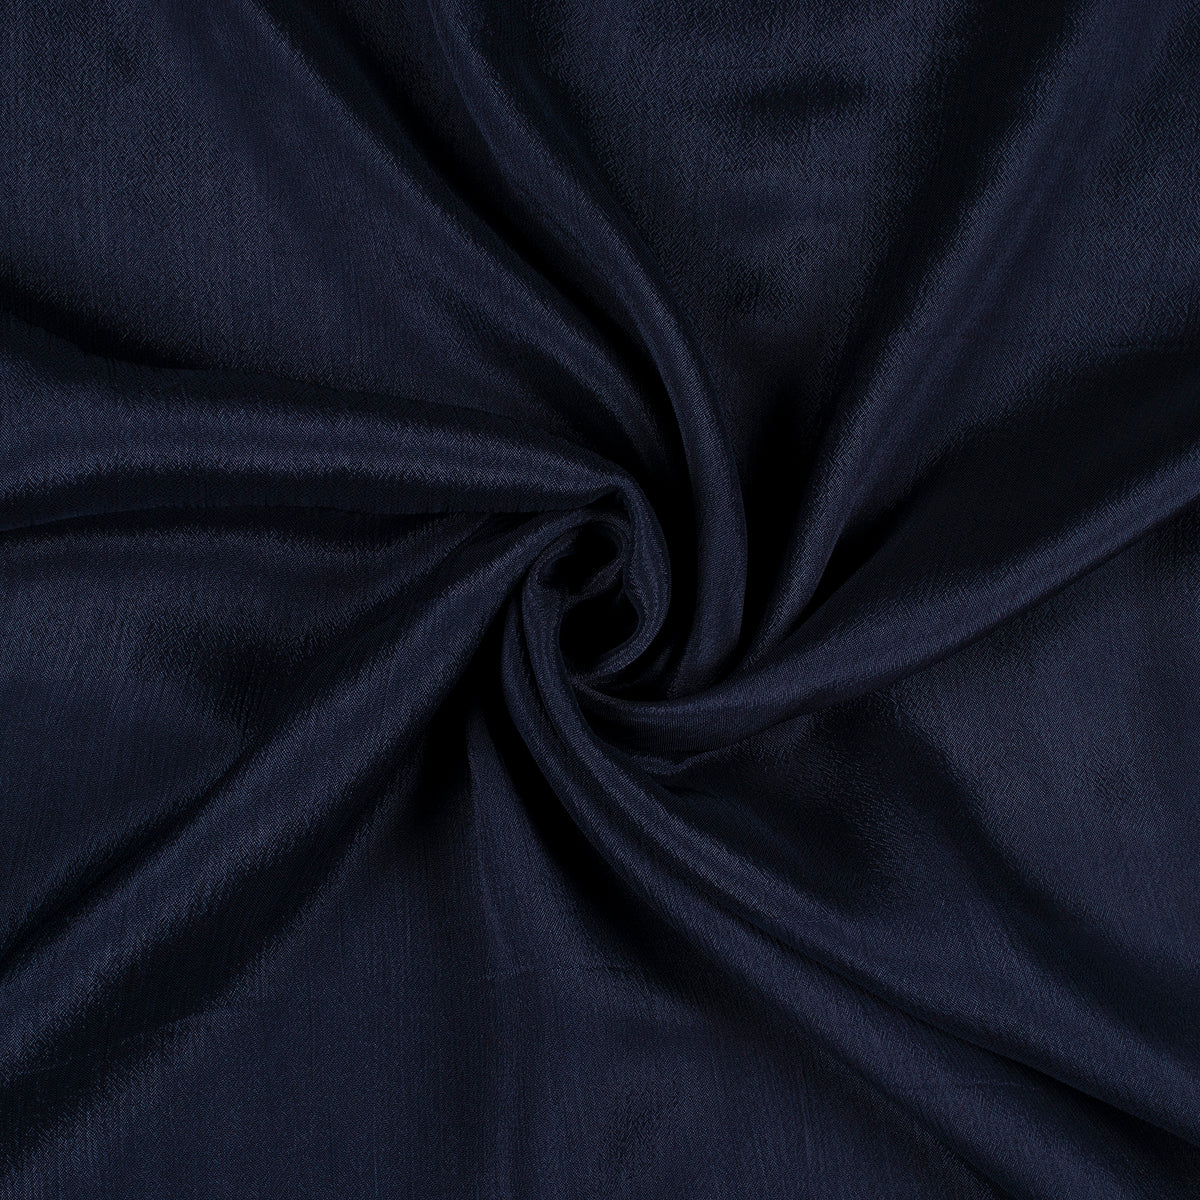 Navy Blue Plain Pure Chinnon Chiffon Fabric